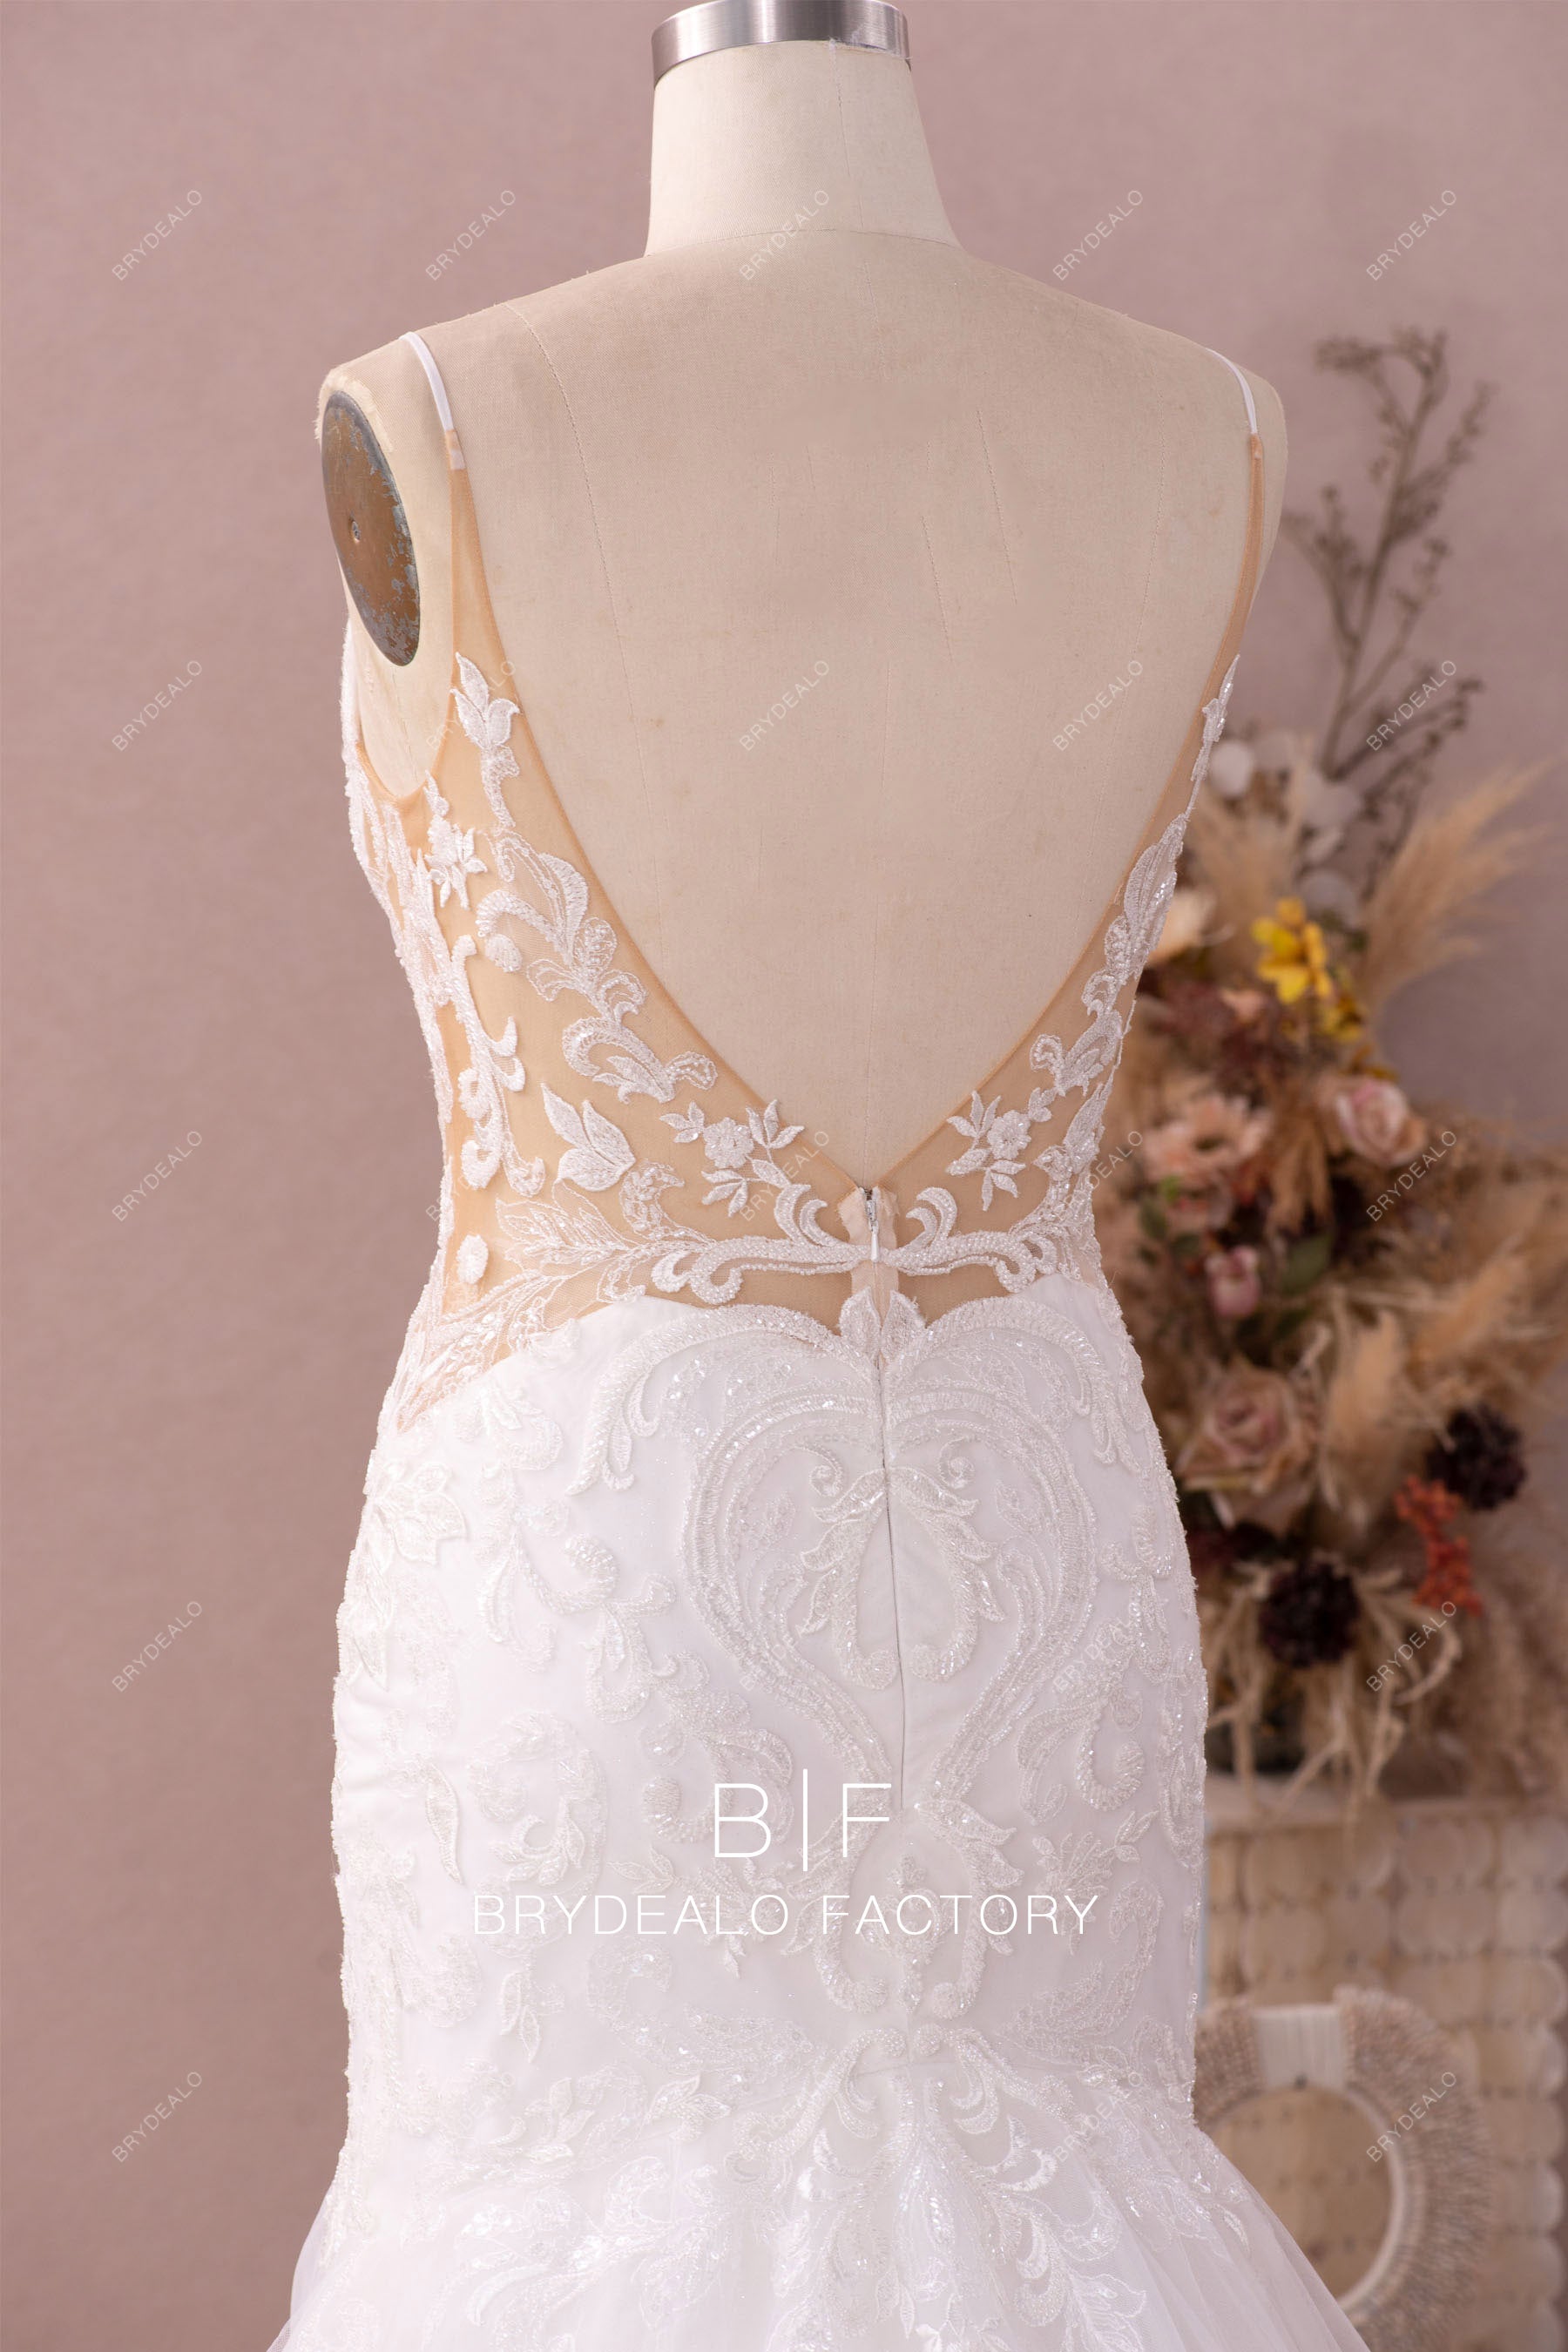 cutout lace crepe wedding dress